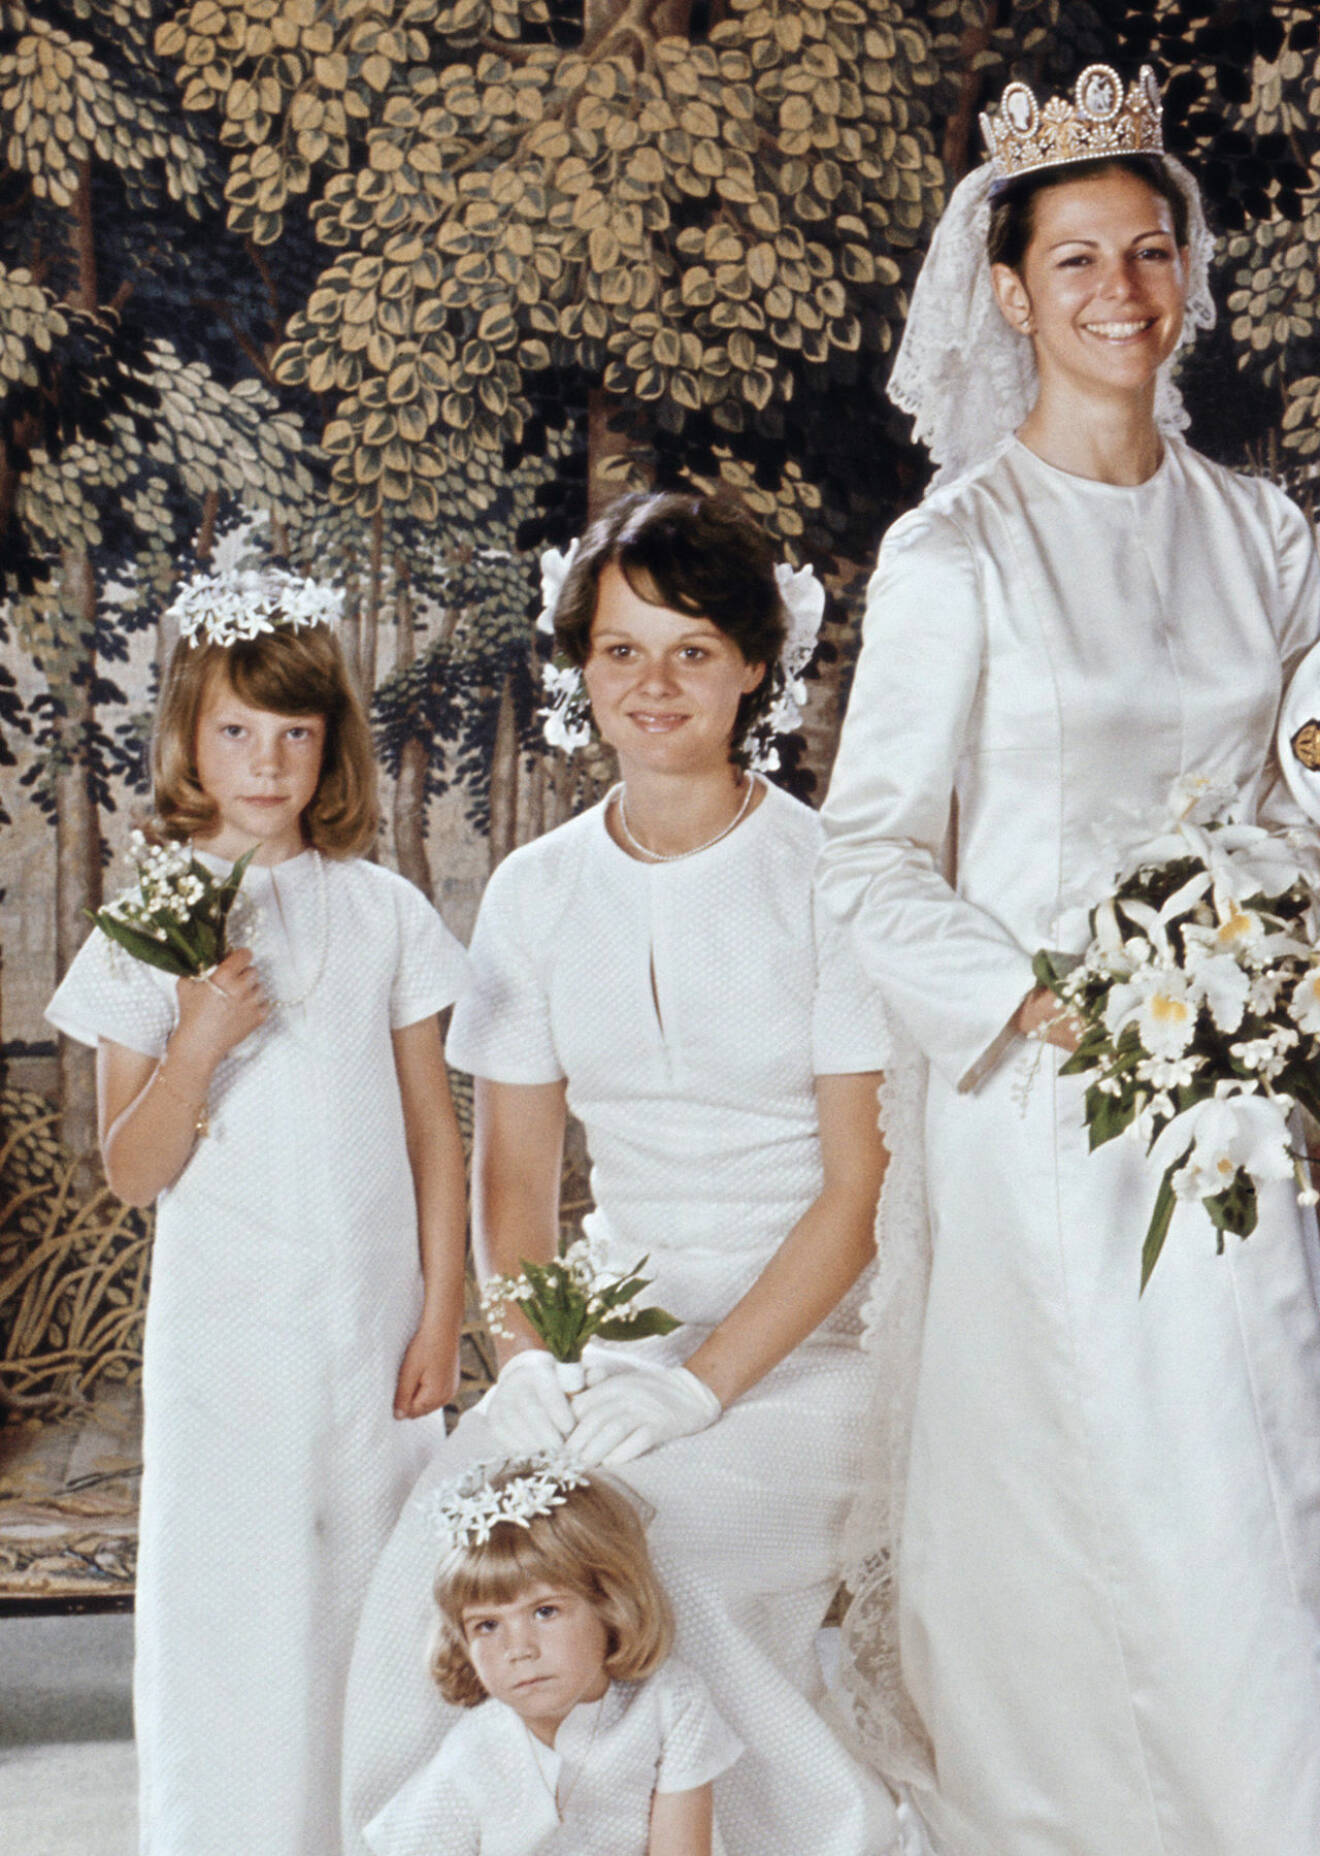 Drottning Silvia som brud 1976 med sin tärna Carmita Sommerlath och två av brudnäbbarna: Hélène Silfverschiöld och Amelie Middelschulte.